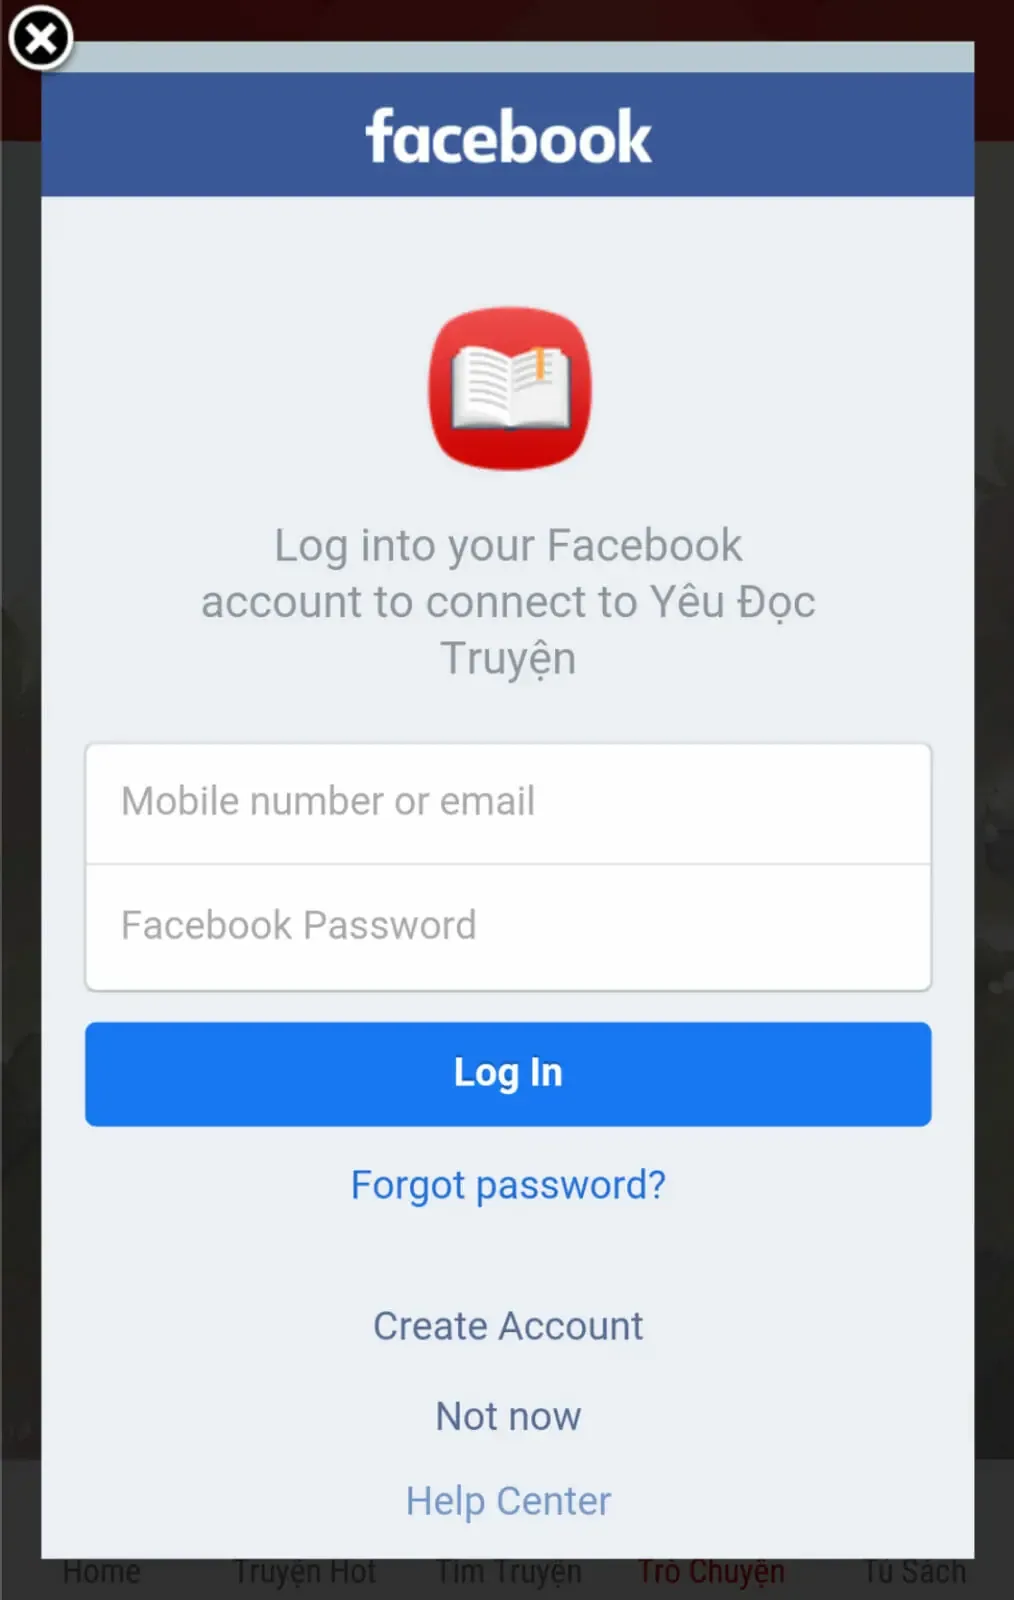 Trojan do hacker Việt viết lây nhiễm 300.000 thiết bị Android nhằm cướp tài khoản Facebook